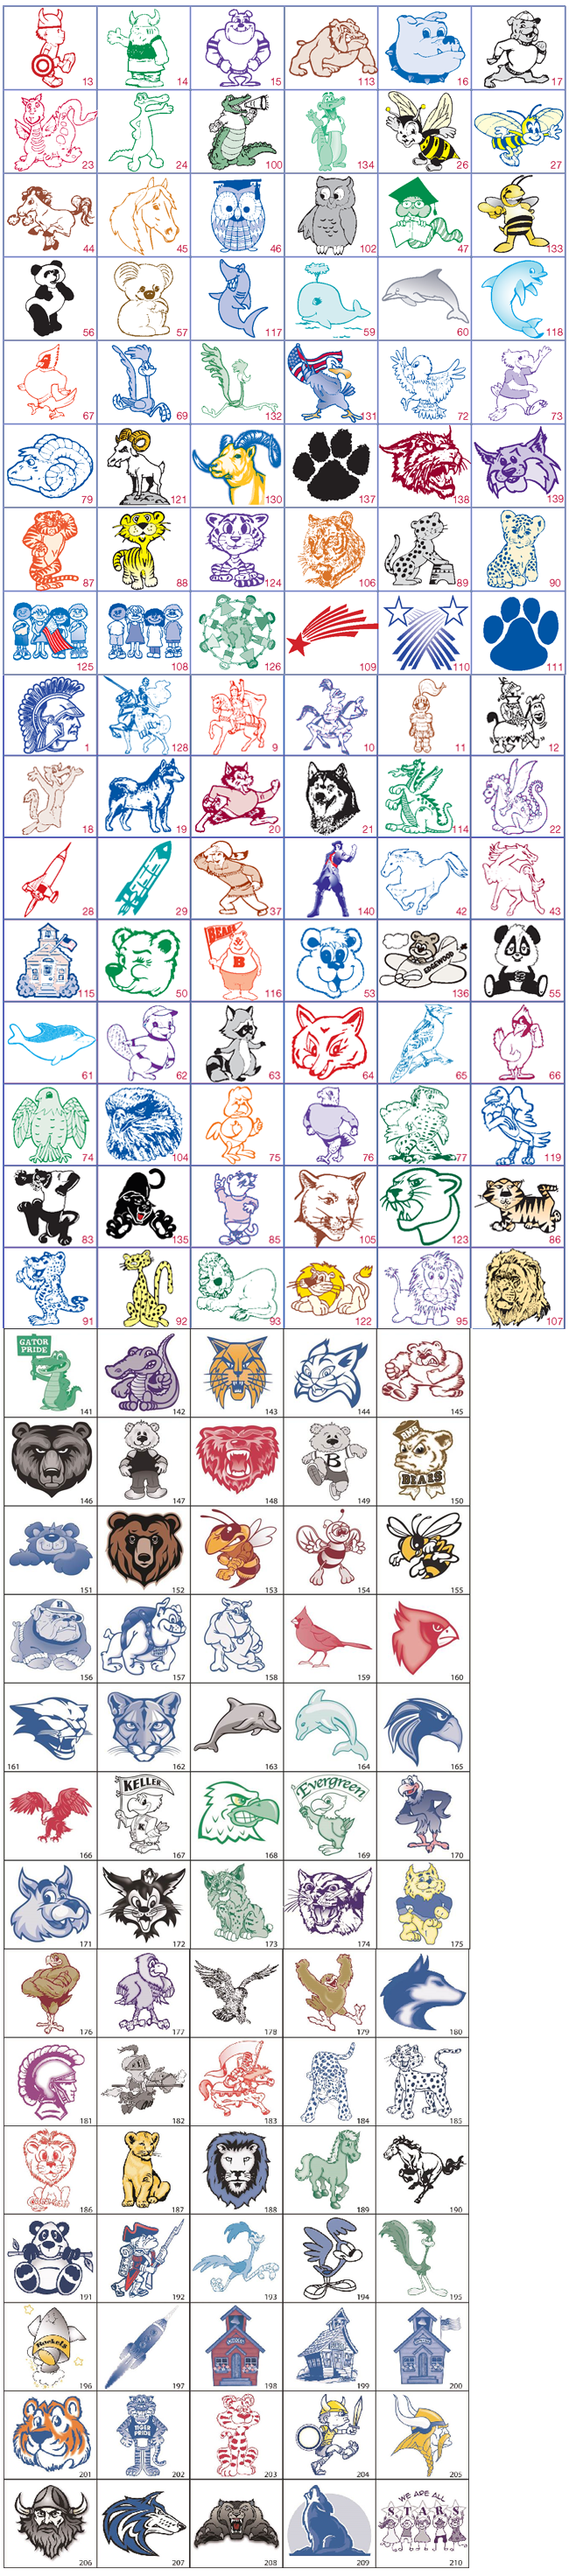 Folder Mascots